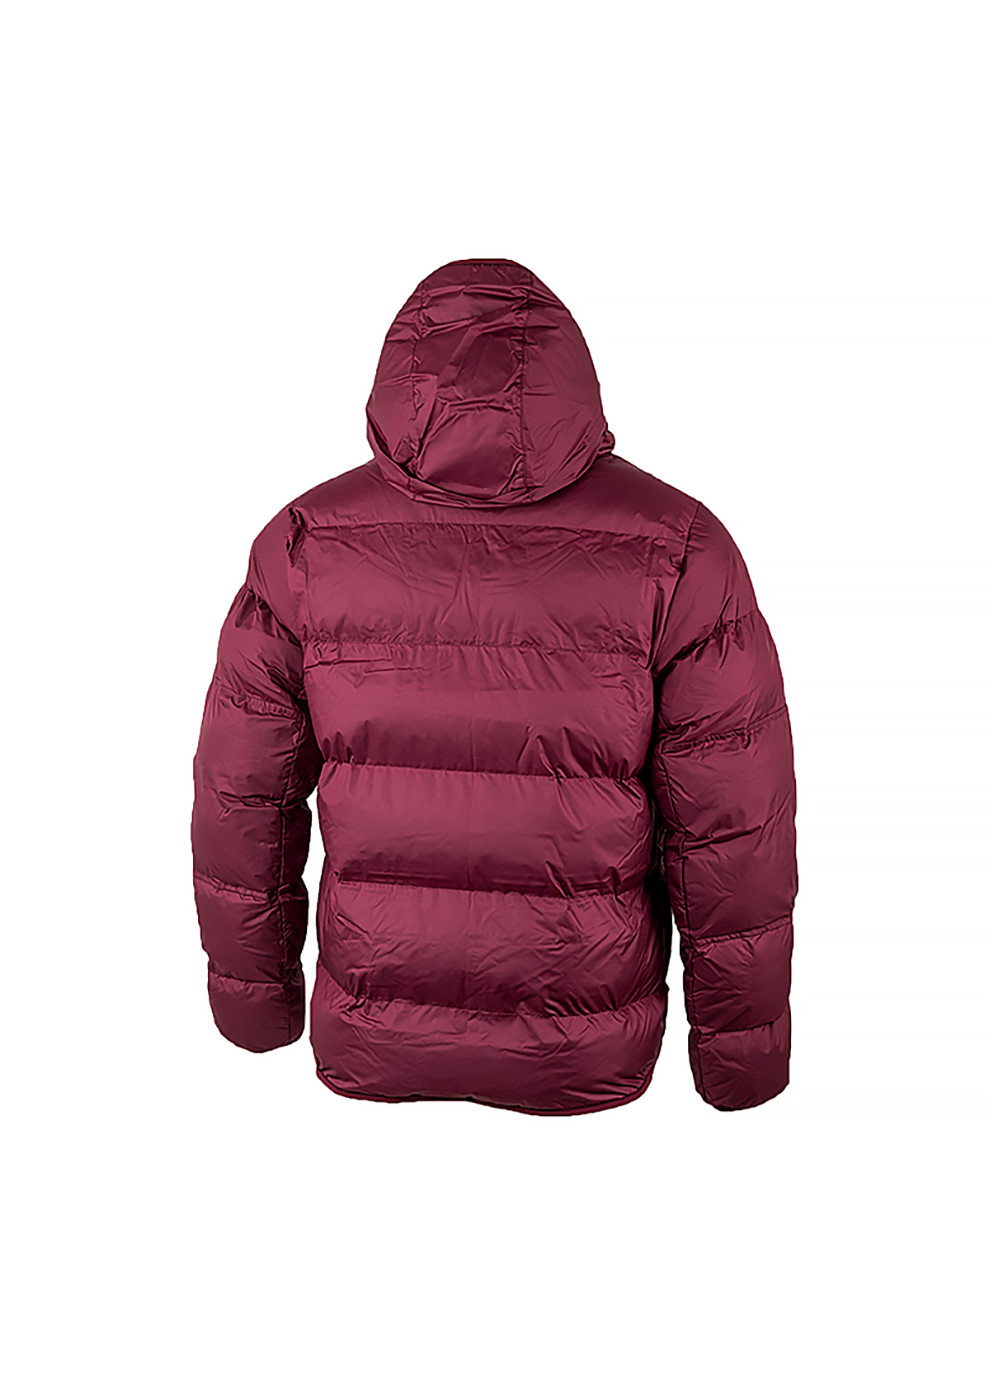 Розовая зимняя мужская куртка m nk sf wr pl-fld hd jkt розовый Nike